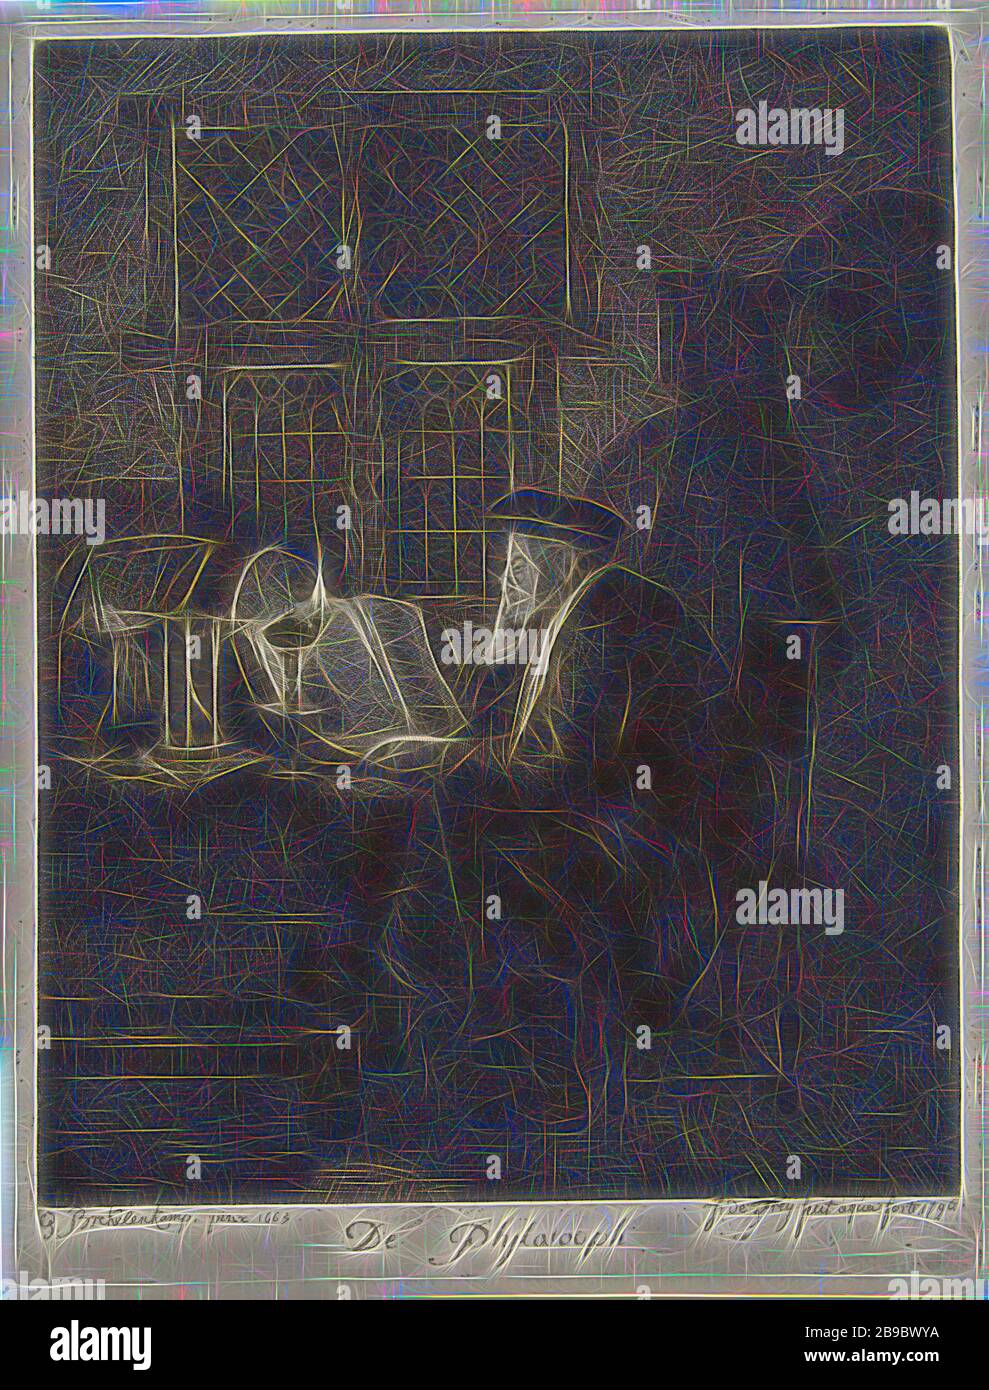 Philosoph in seiner Studie untersucht ein Mann in einem dunklen Raum am Licht einer Öllampe ein Buch auf dem Tisch vor ihm. Hinter dem Buch befindet sich eine Lupe und eine offene Schachtel mit Papier und einer Sanduhr auf dem Tisch, Gelehrter in seiner Studie, Lupe, Sanduhr, Johannes Pieter de Frey (auf Objekt erwähnt), 1796, Papier, Radierung, h 220 mm × w 167 mm, von Gibon neu vorgestellt, Design mit warmem, fröhlichem Glanz von Helligkeit und Lichtstrahlen. Klassische Kunst mit moderner Note neu erfunden. Fotografie inspiriert von Futurismus, die dynamische Energie moderner Technologie, movem, umfasst Stockfoto